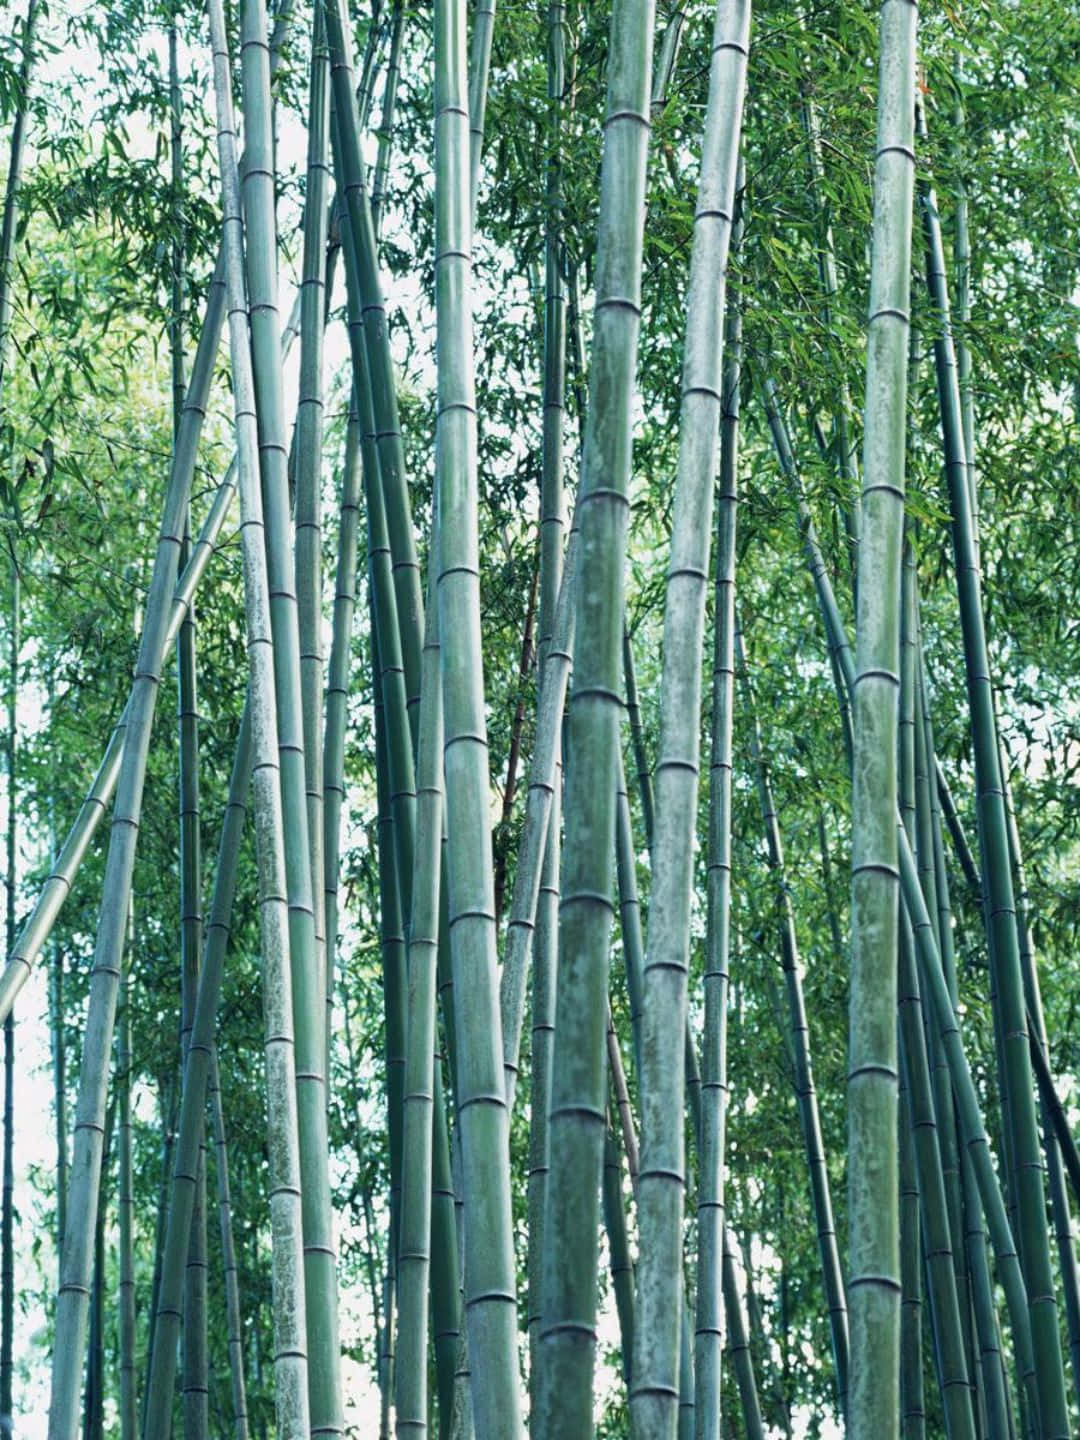 Sfondodi Bambù 1440p Alberi Di Bambù Con Steli Grigi.